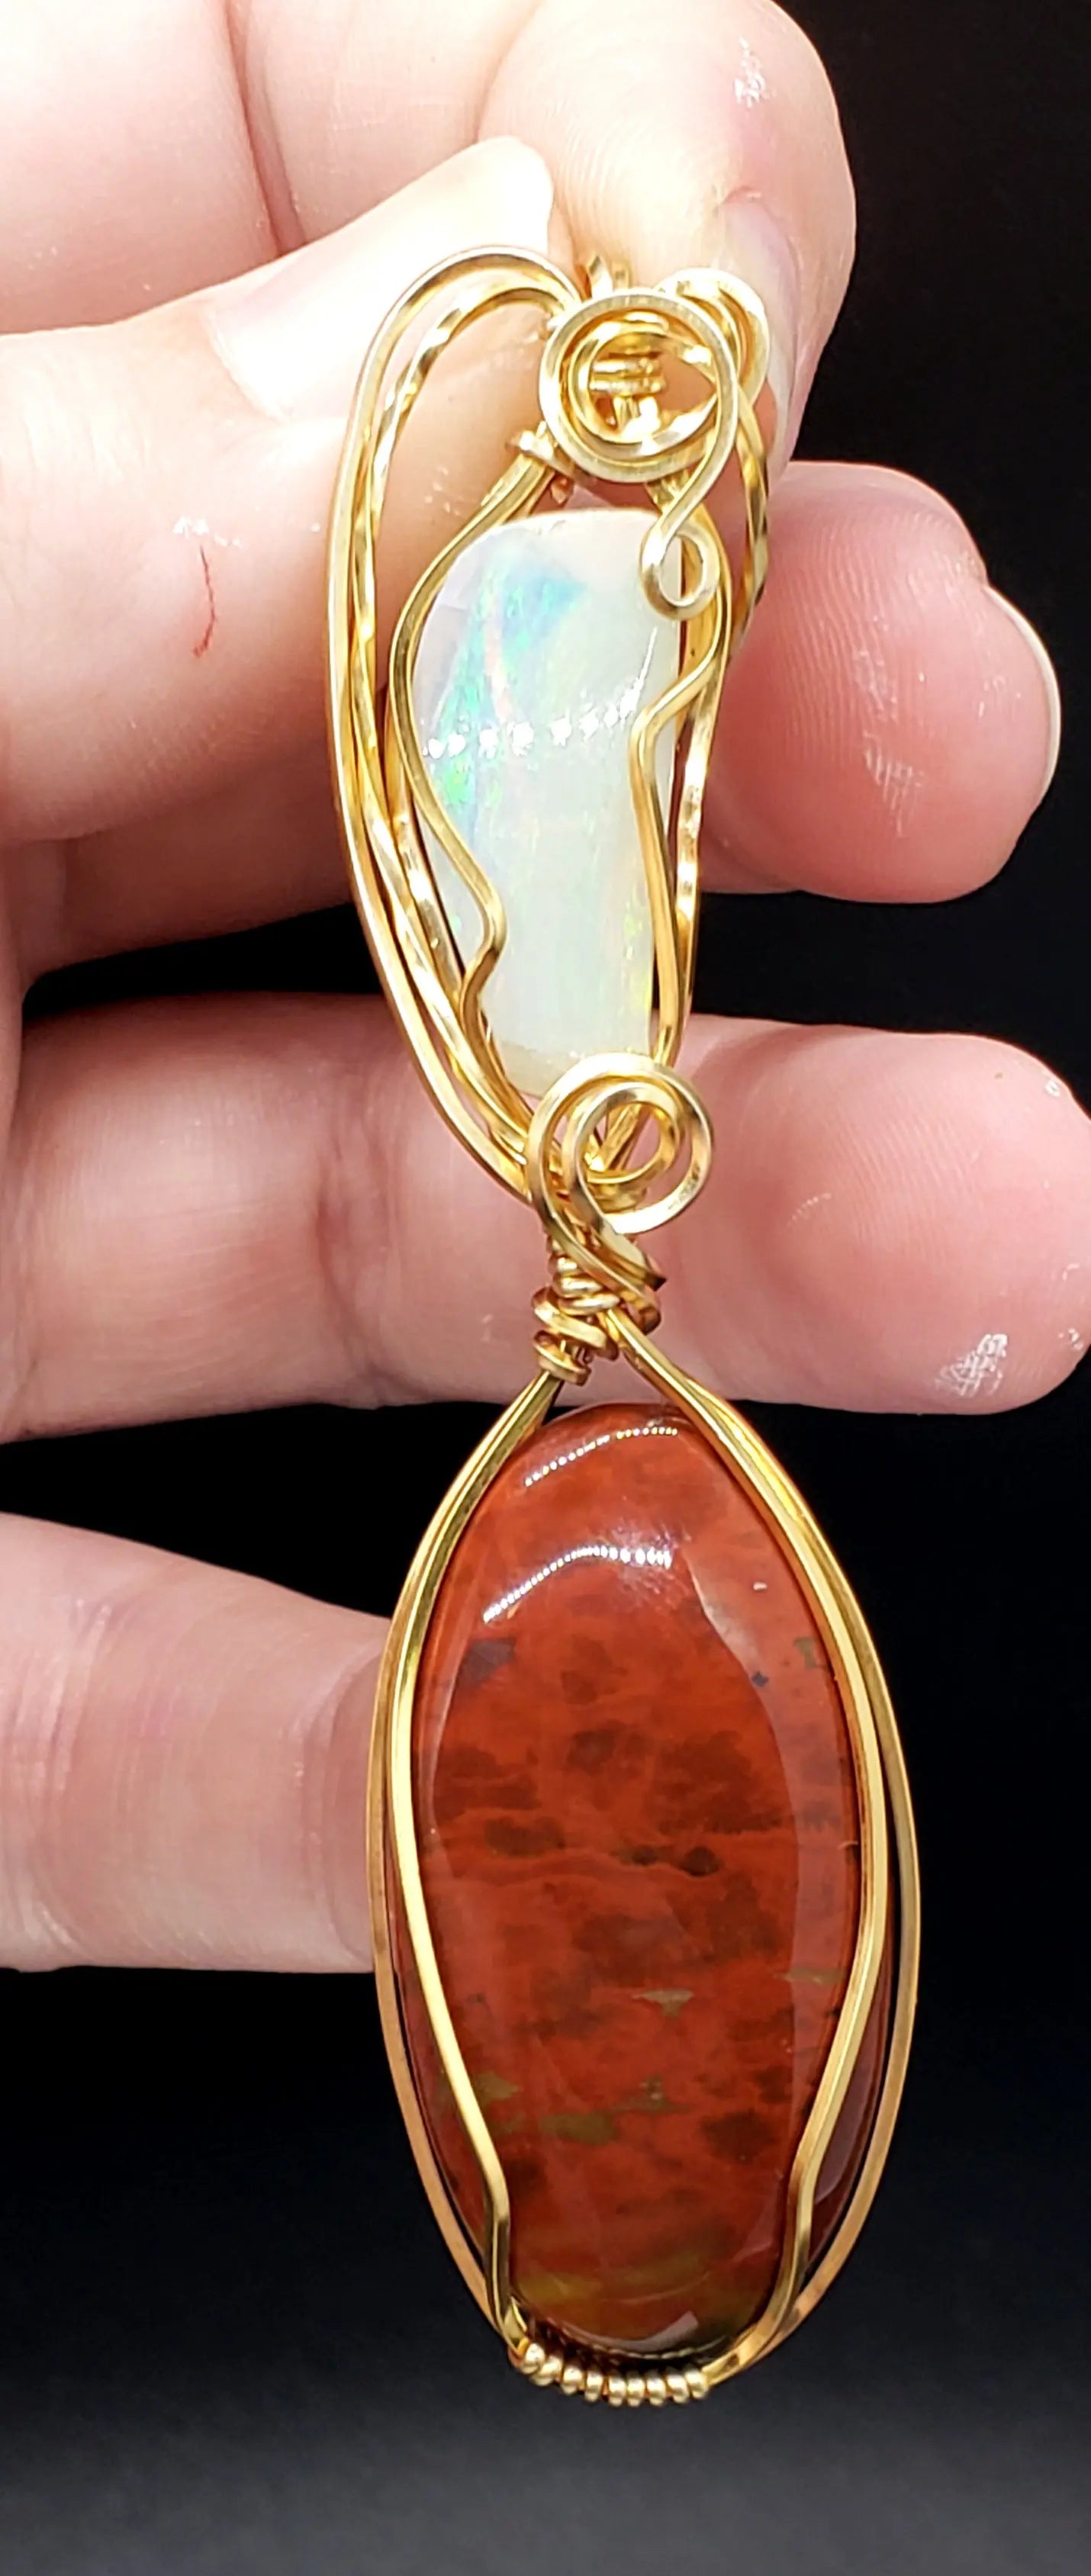 Opal and Bloodstone Pendant    bloodstone, gemstone pendant, opal